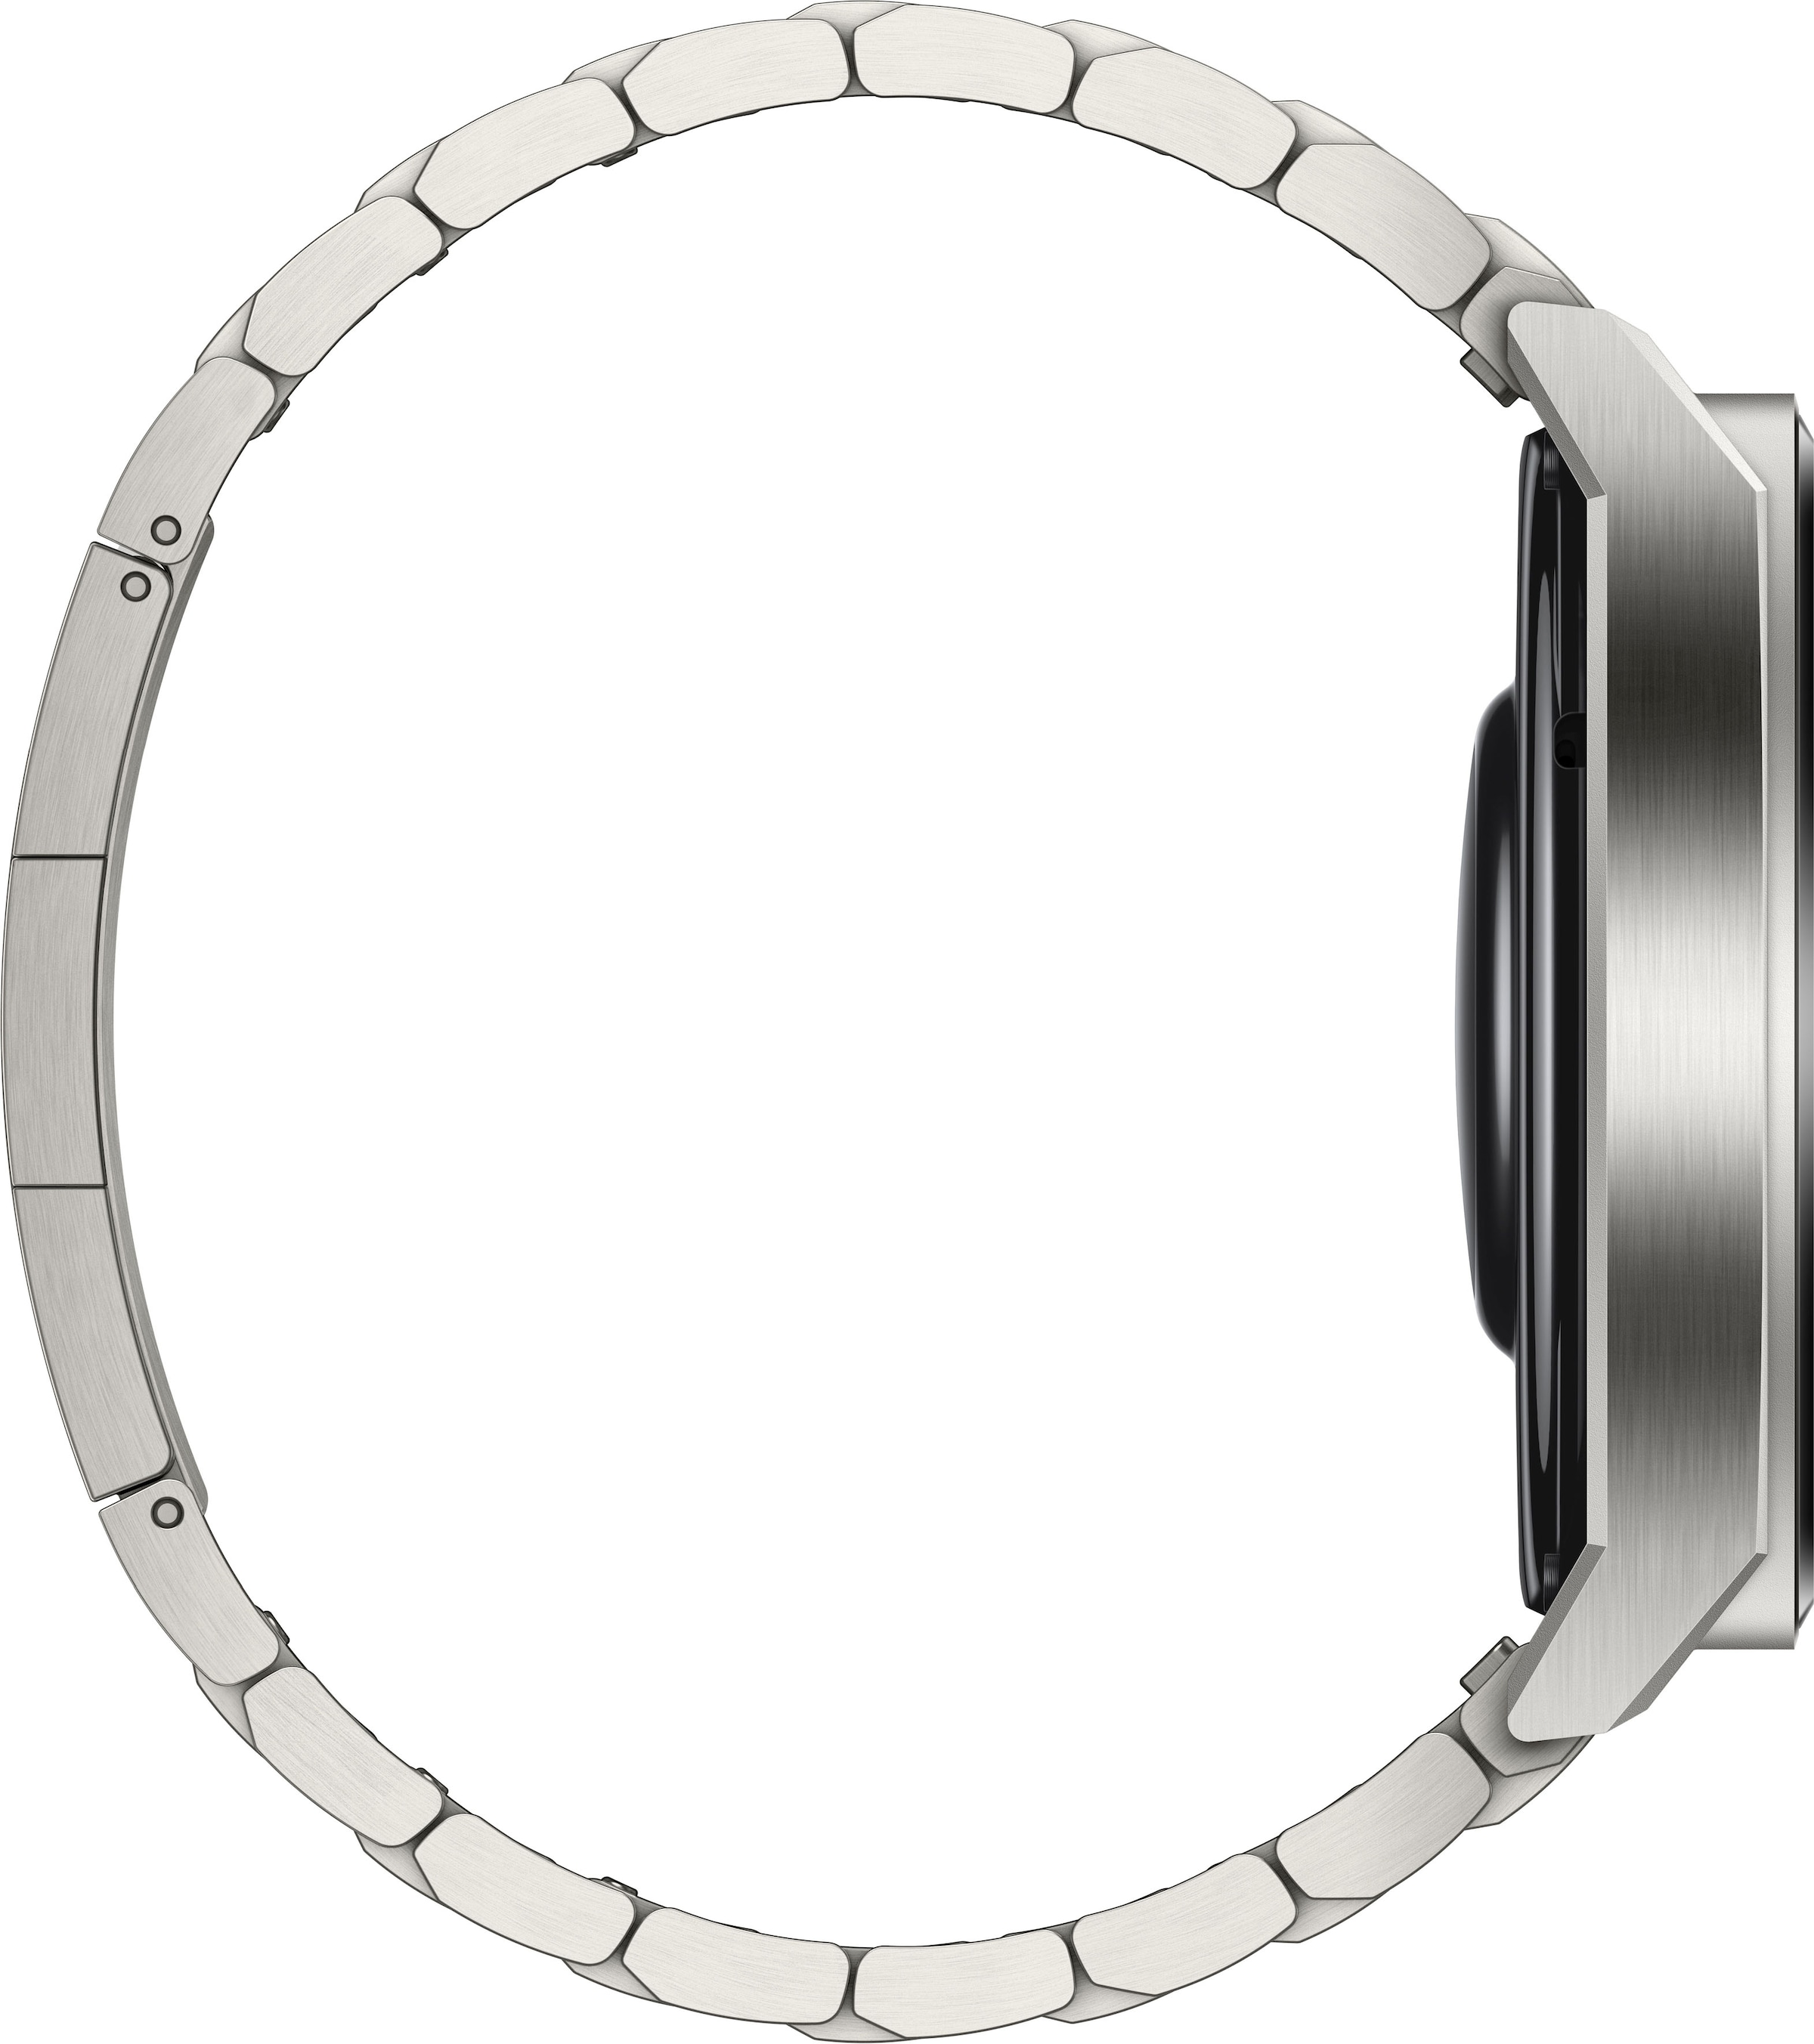 Huawei Smartwatch »Watch GT3 Pro 46mm«, (3 Jahre Herstellergarantie) | BAUR | alle Smartwatches